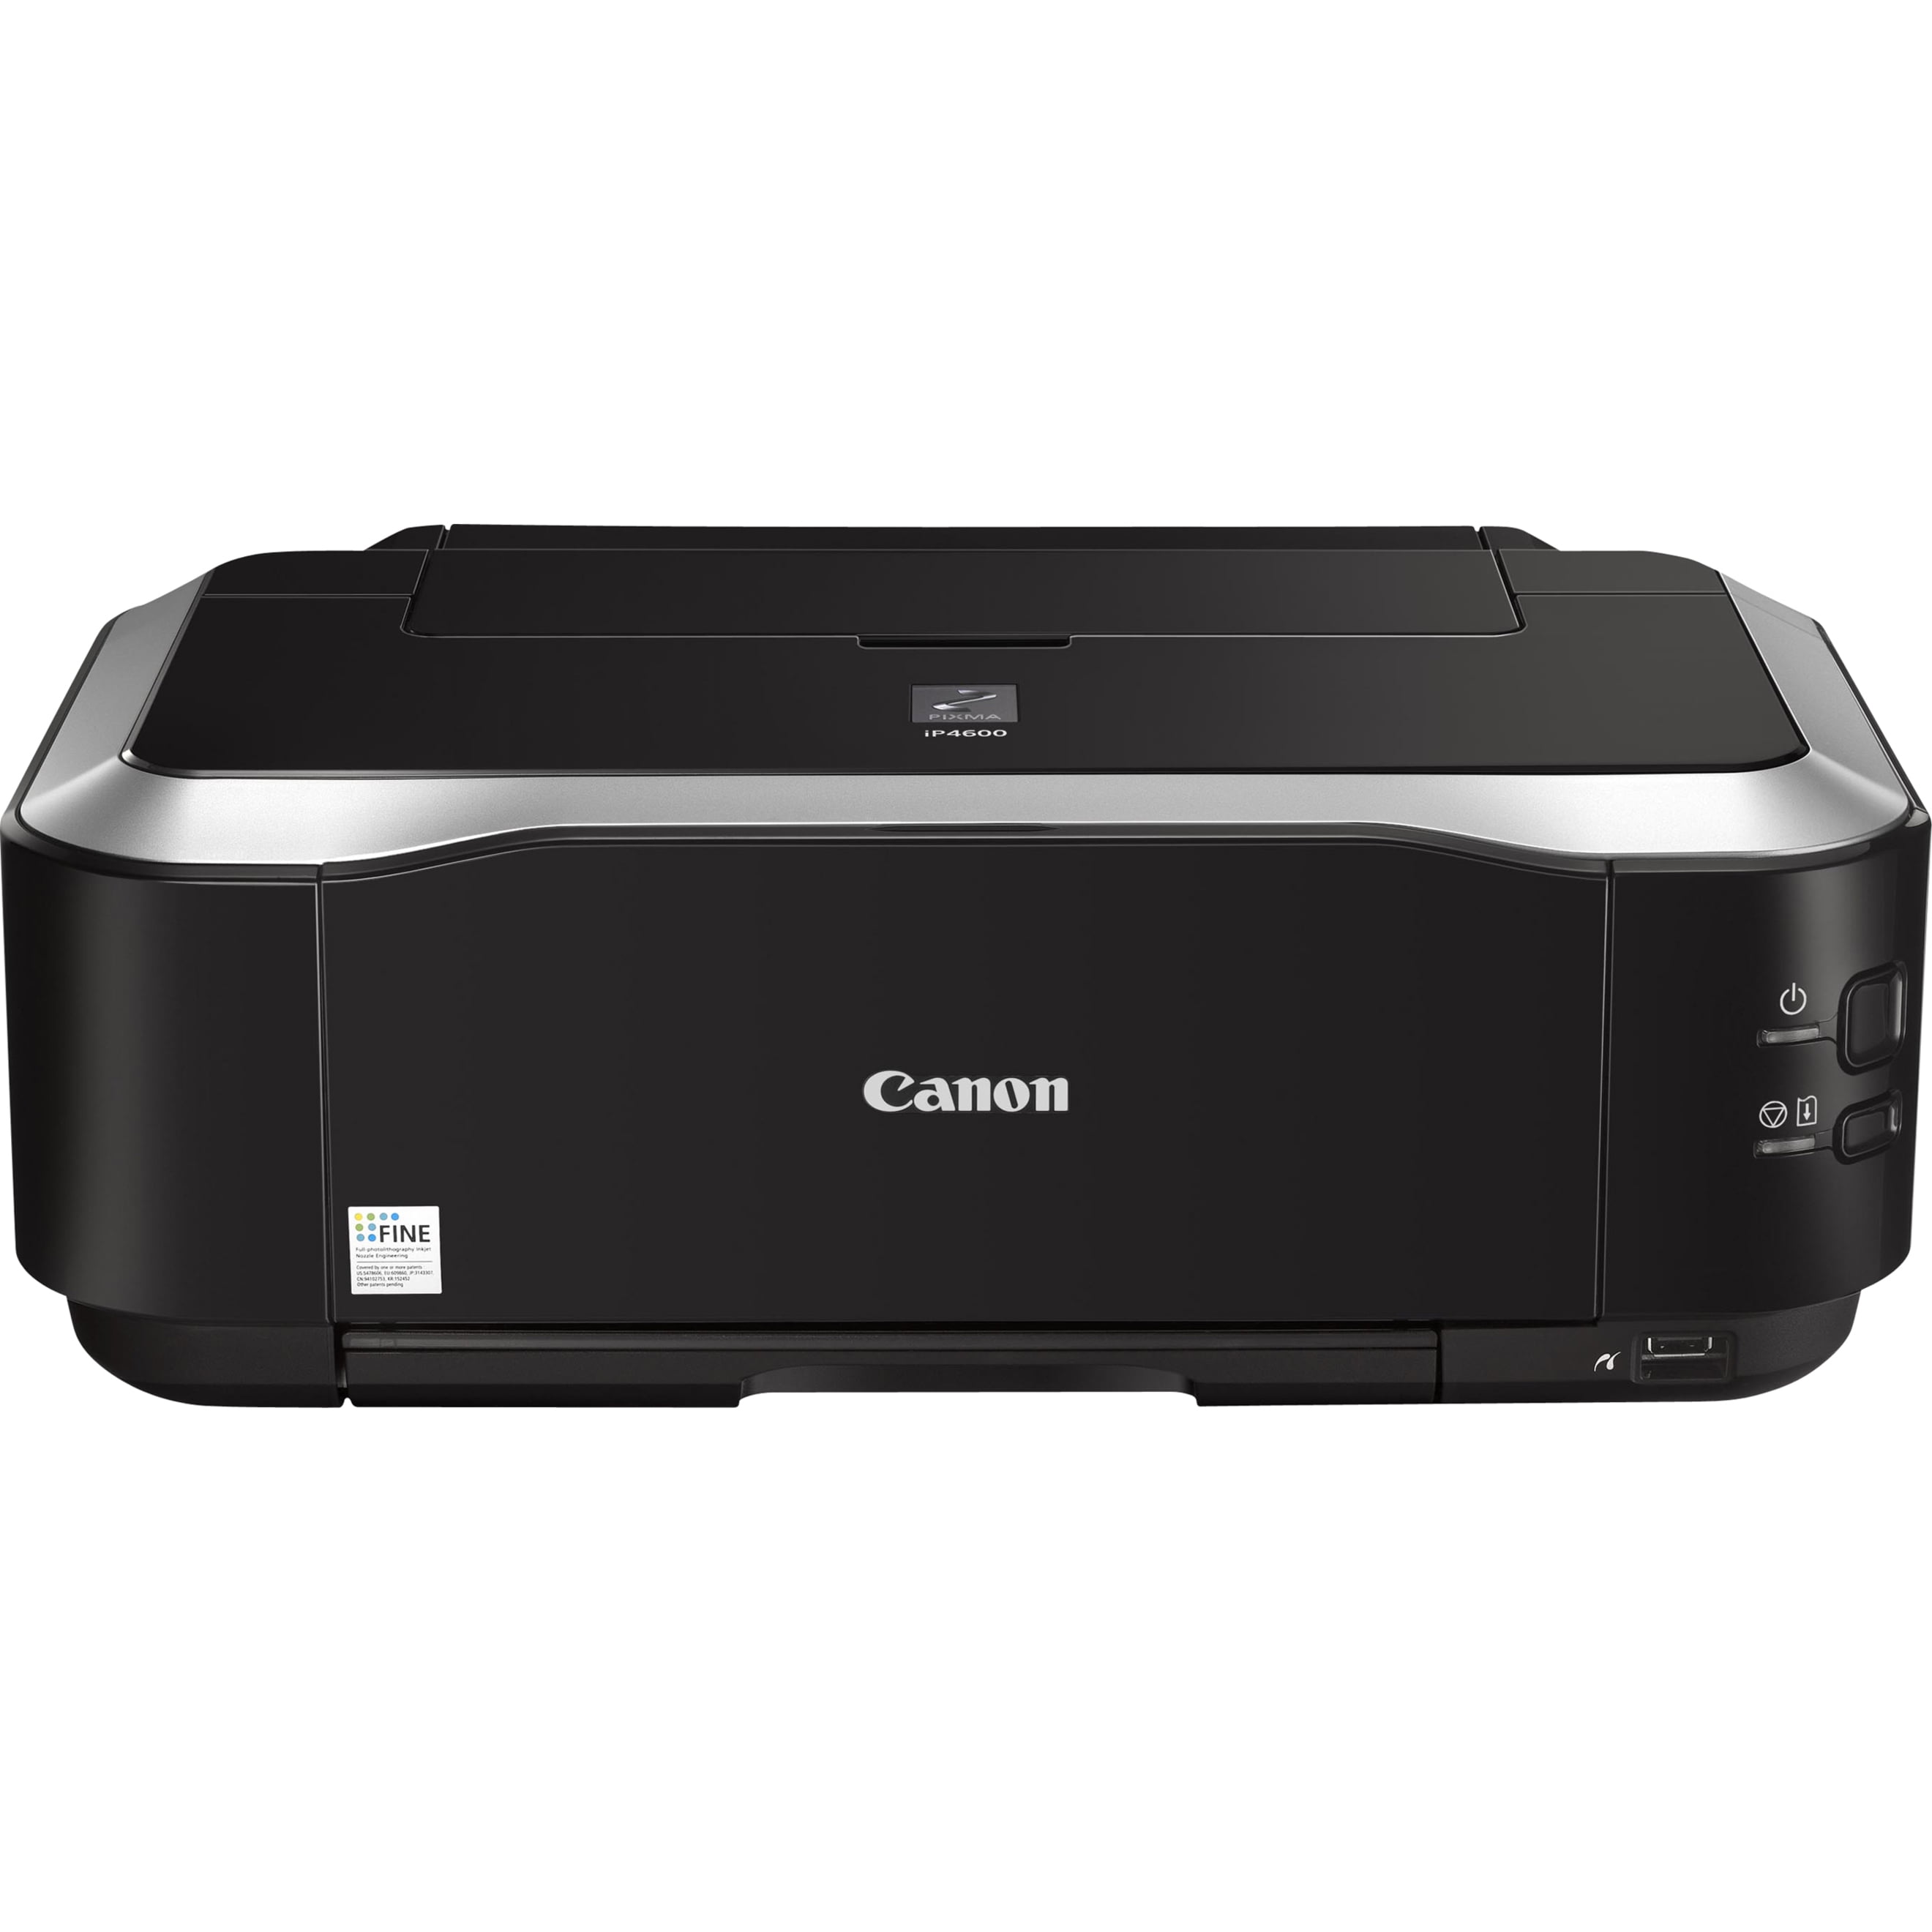 Принтеры canon pixma отзывы. Canon ip3600. PIXMA ip3600. Canon PIXMA ip3300. Canon ip4700 комплектация.